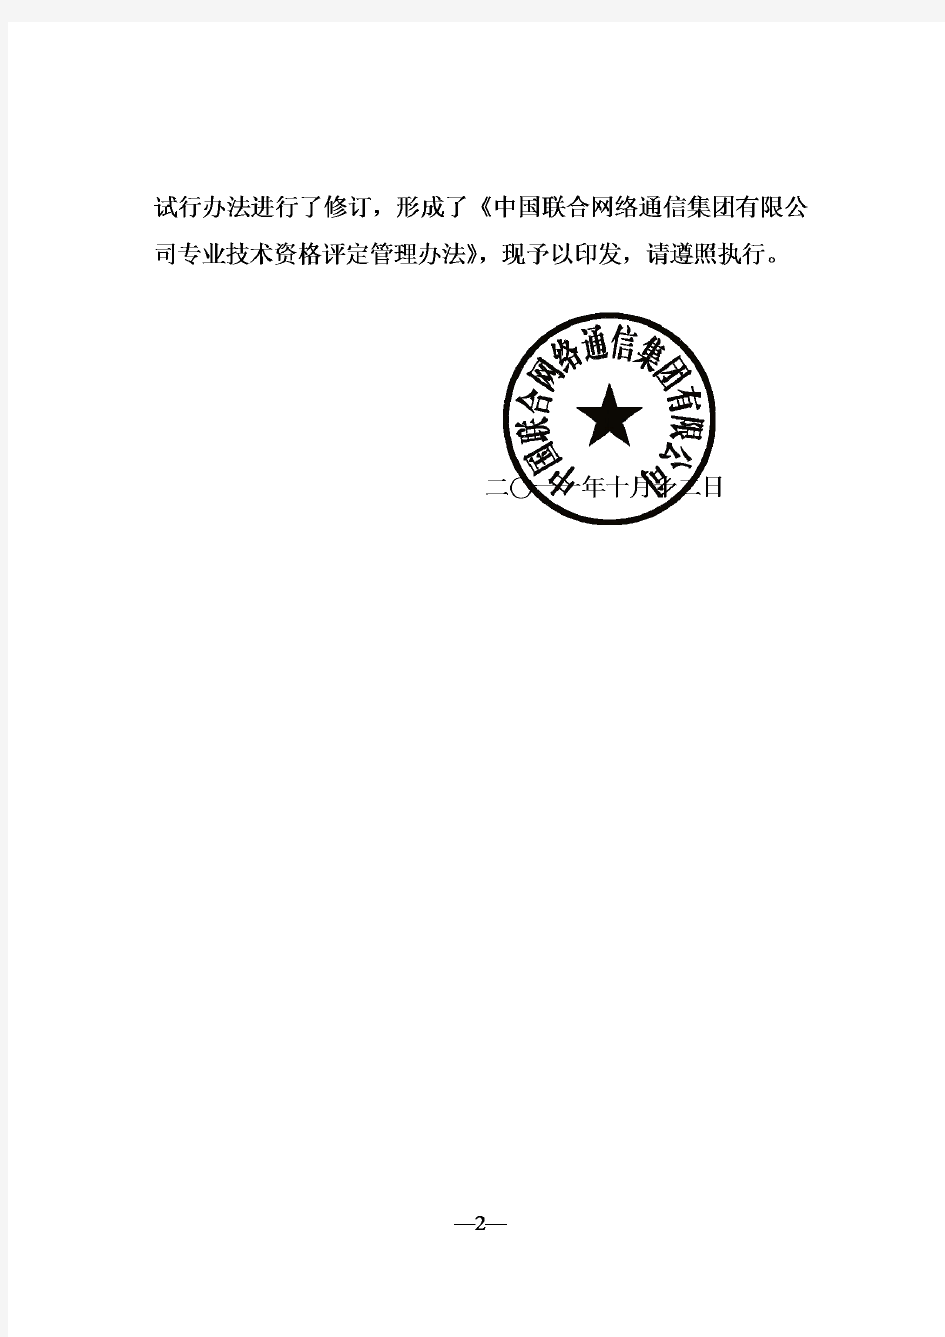 关于印发《中国联合网络通信集团有限公司专业技术资格评定管理办法》的通知